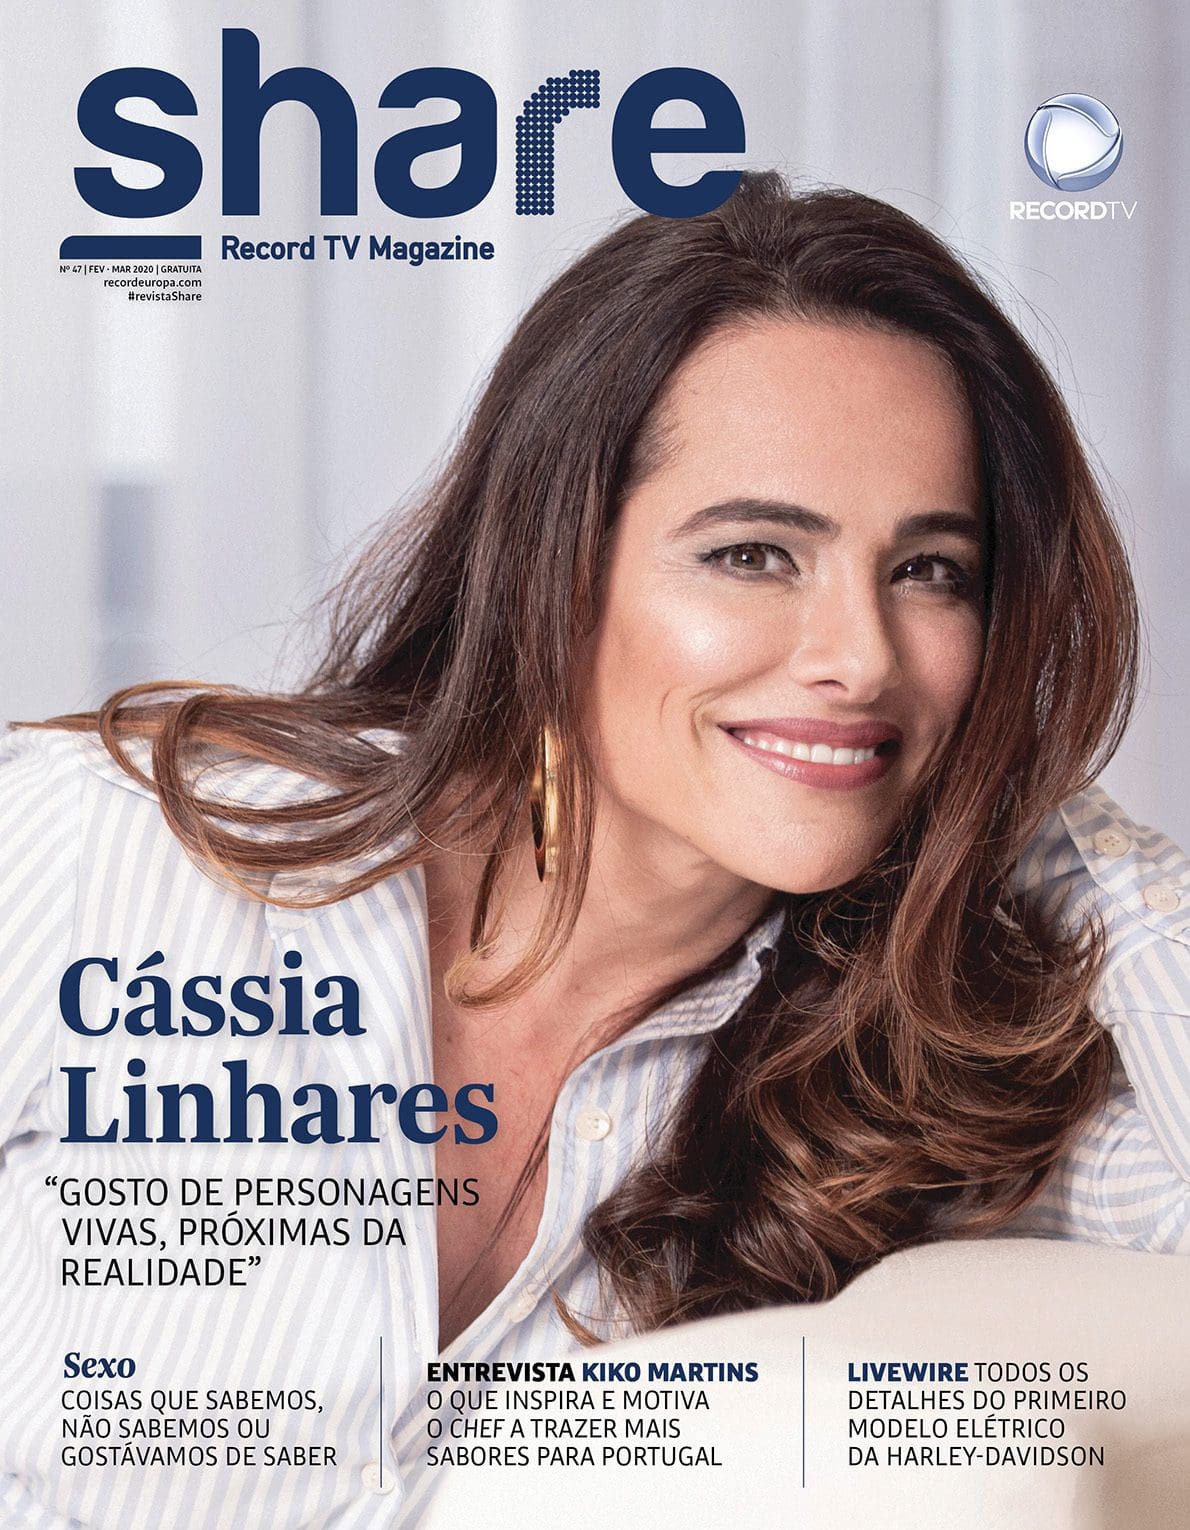 Share Magazine 47 - Cassia Linhares